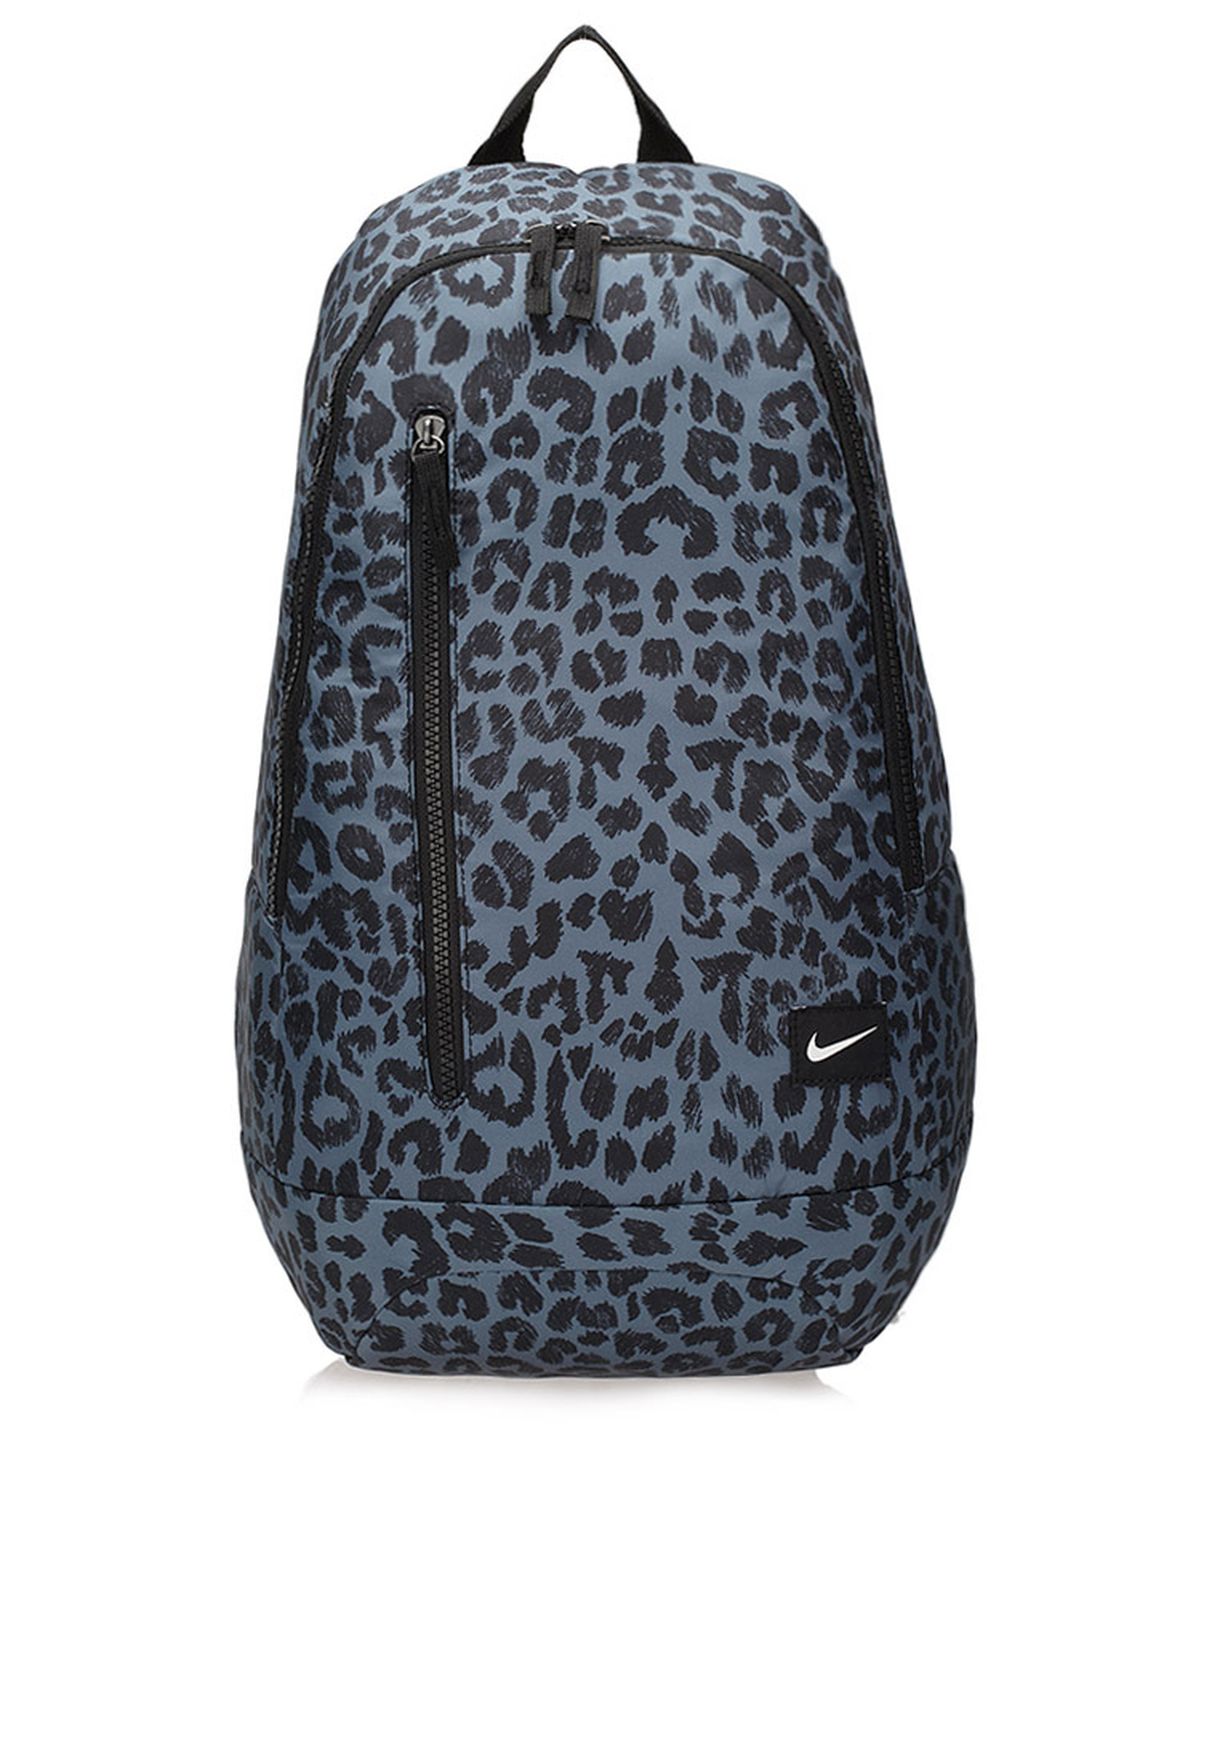 nike leopard backpack